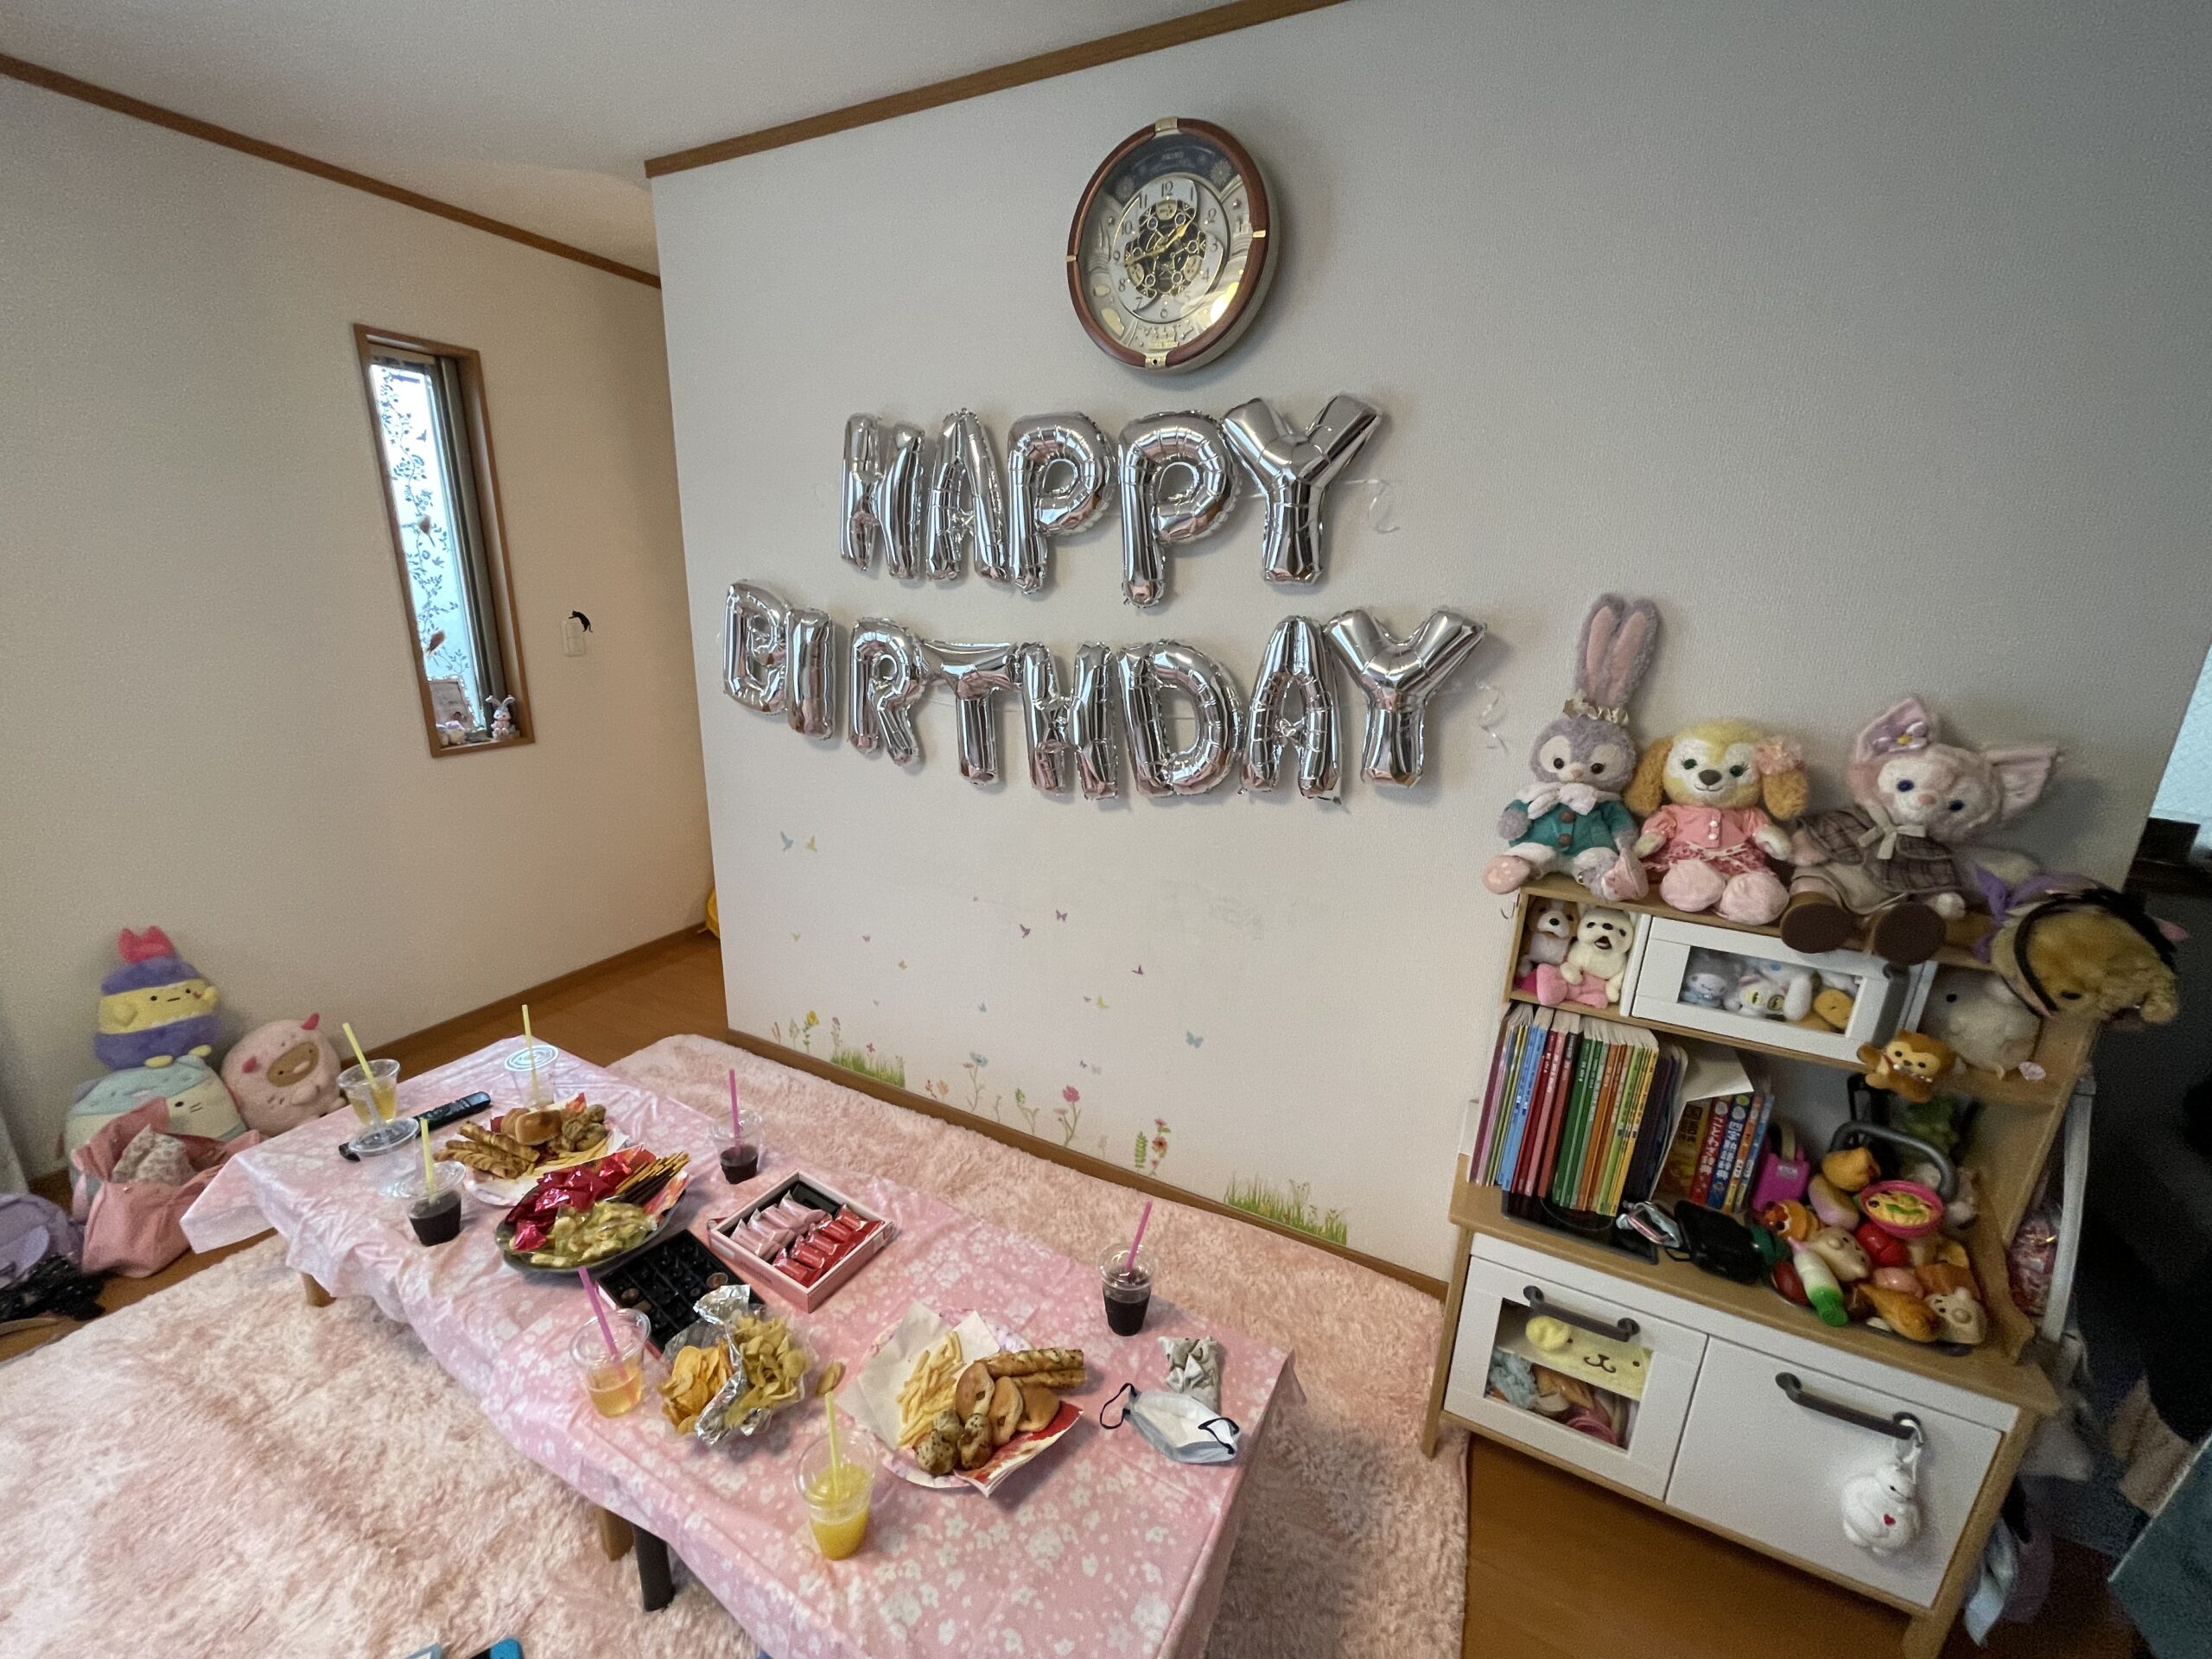 Happy Birthday バルーンアートされた部屋 10歳娘誕生会でマジックショー 横浜市, 神奈川県